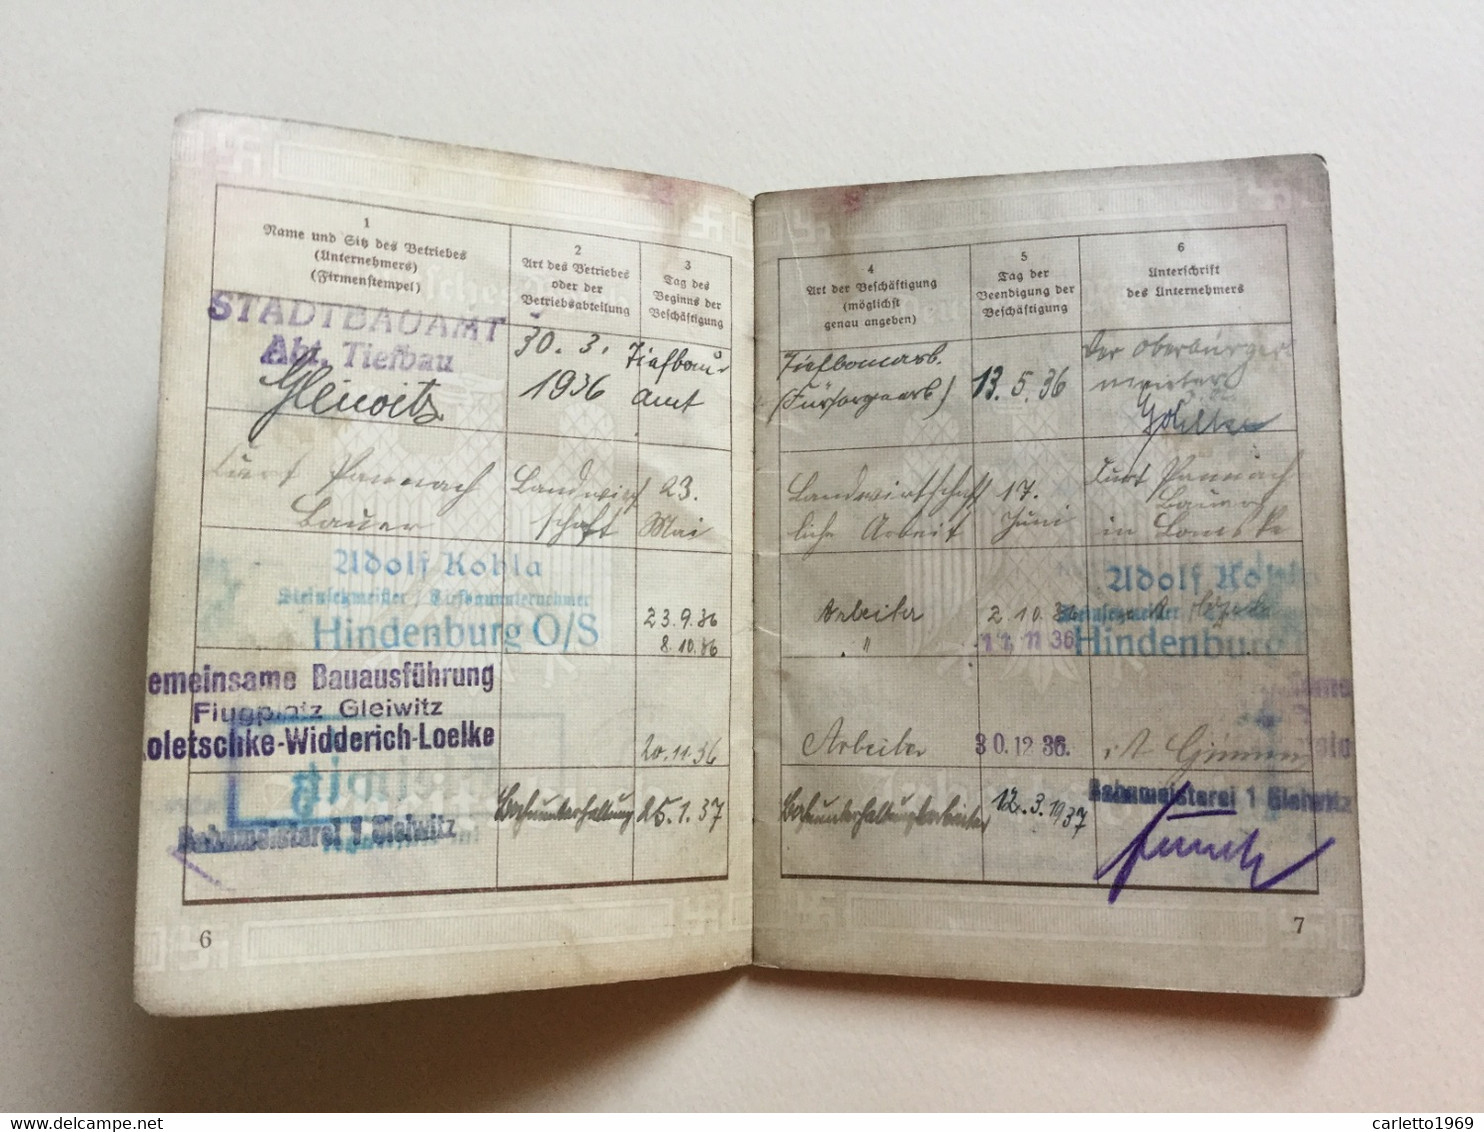 ARBEITSBUCH GLEIWITZ 1936 - EINLAGEBLATT FÜHRERSCHEIN 1938 - REICHSTLEIDERKARTE 1940 - Documents